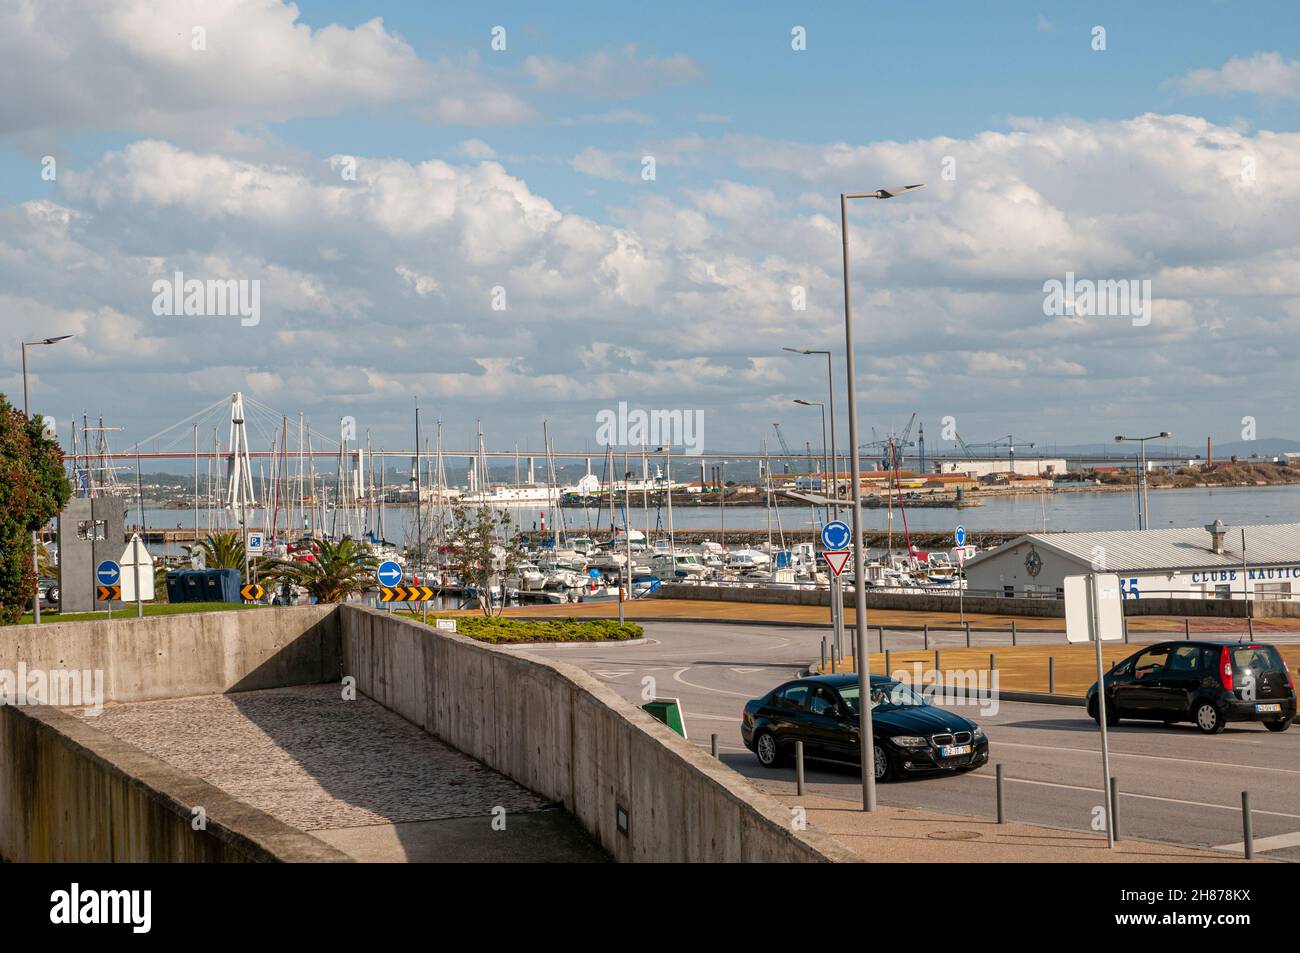 The port of Figueira da Foz, Portugal Stock Photo